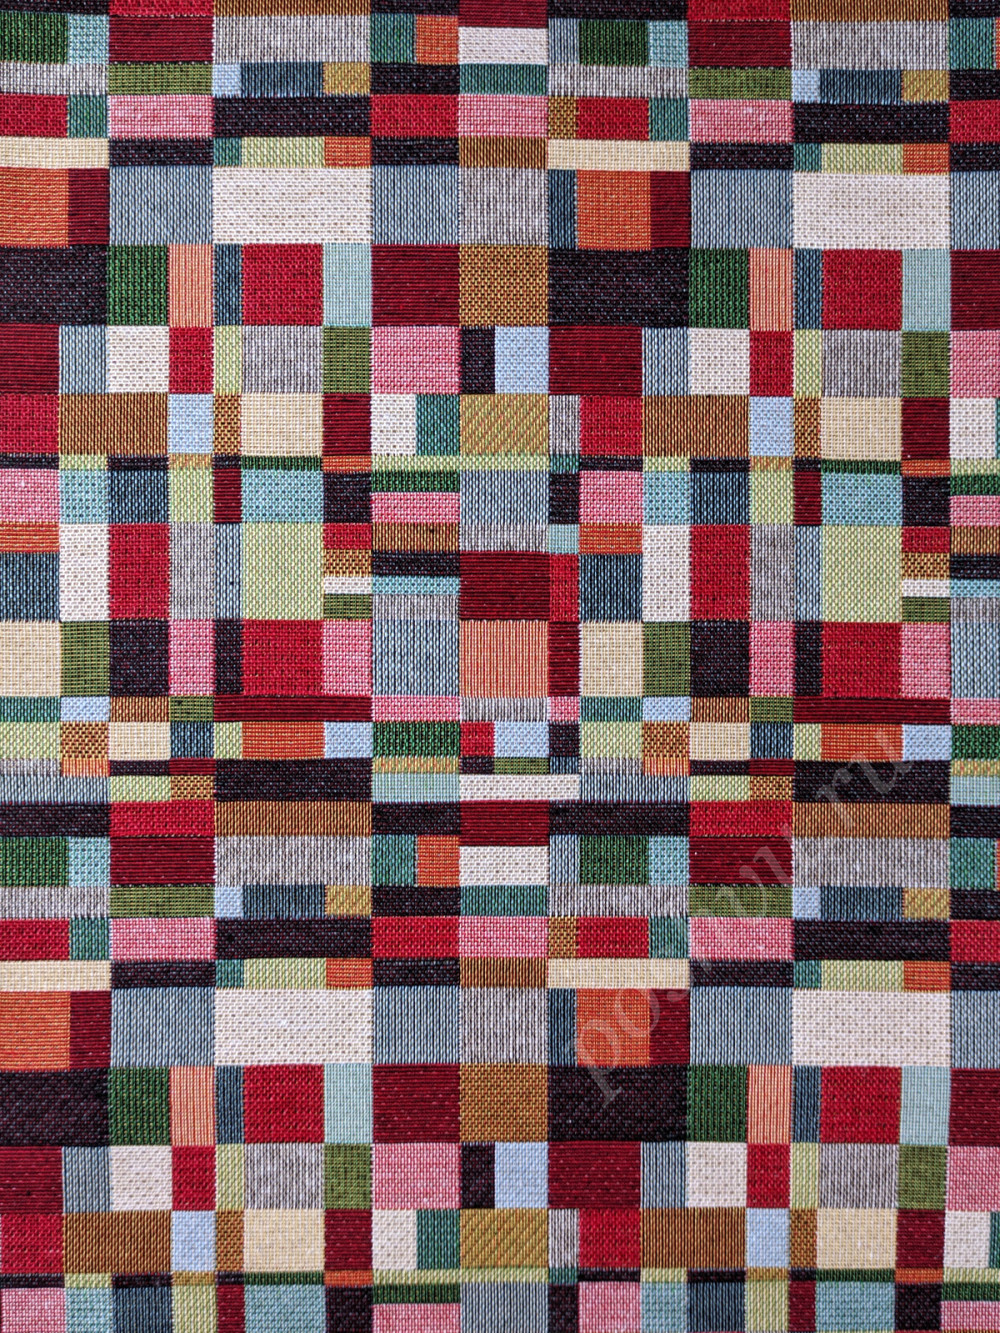 Портьерная ткань гобелен TAPESTRY CUACO разноцветные разновеликие прямоугольники  (раппорт 18х24см)